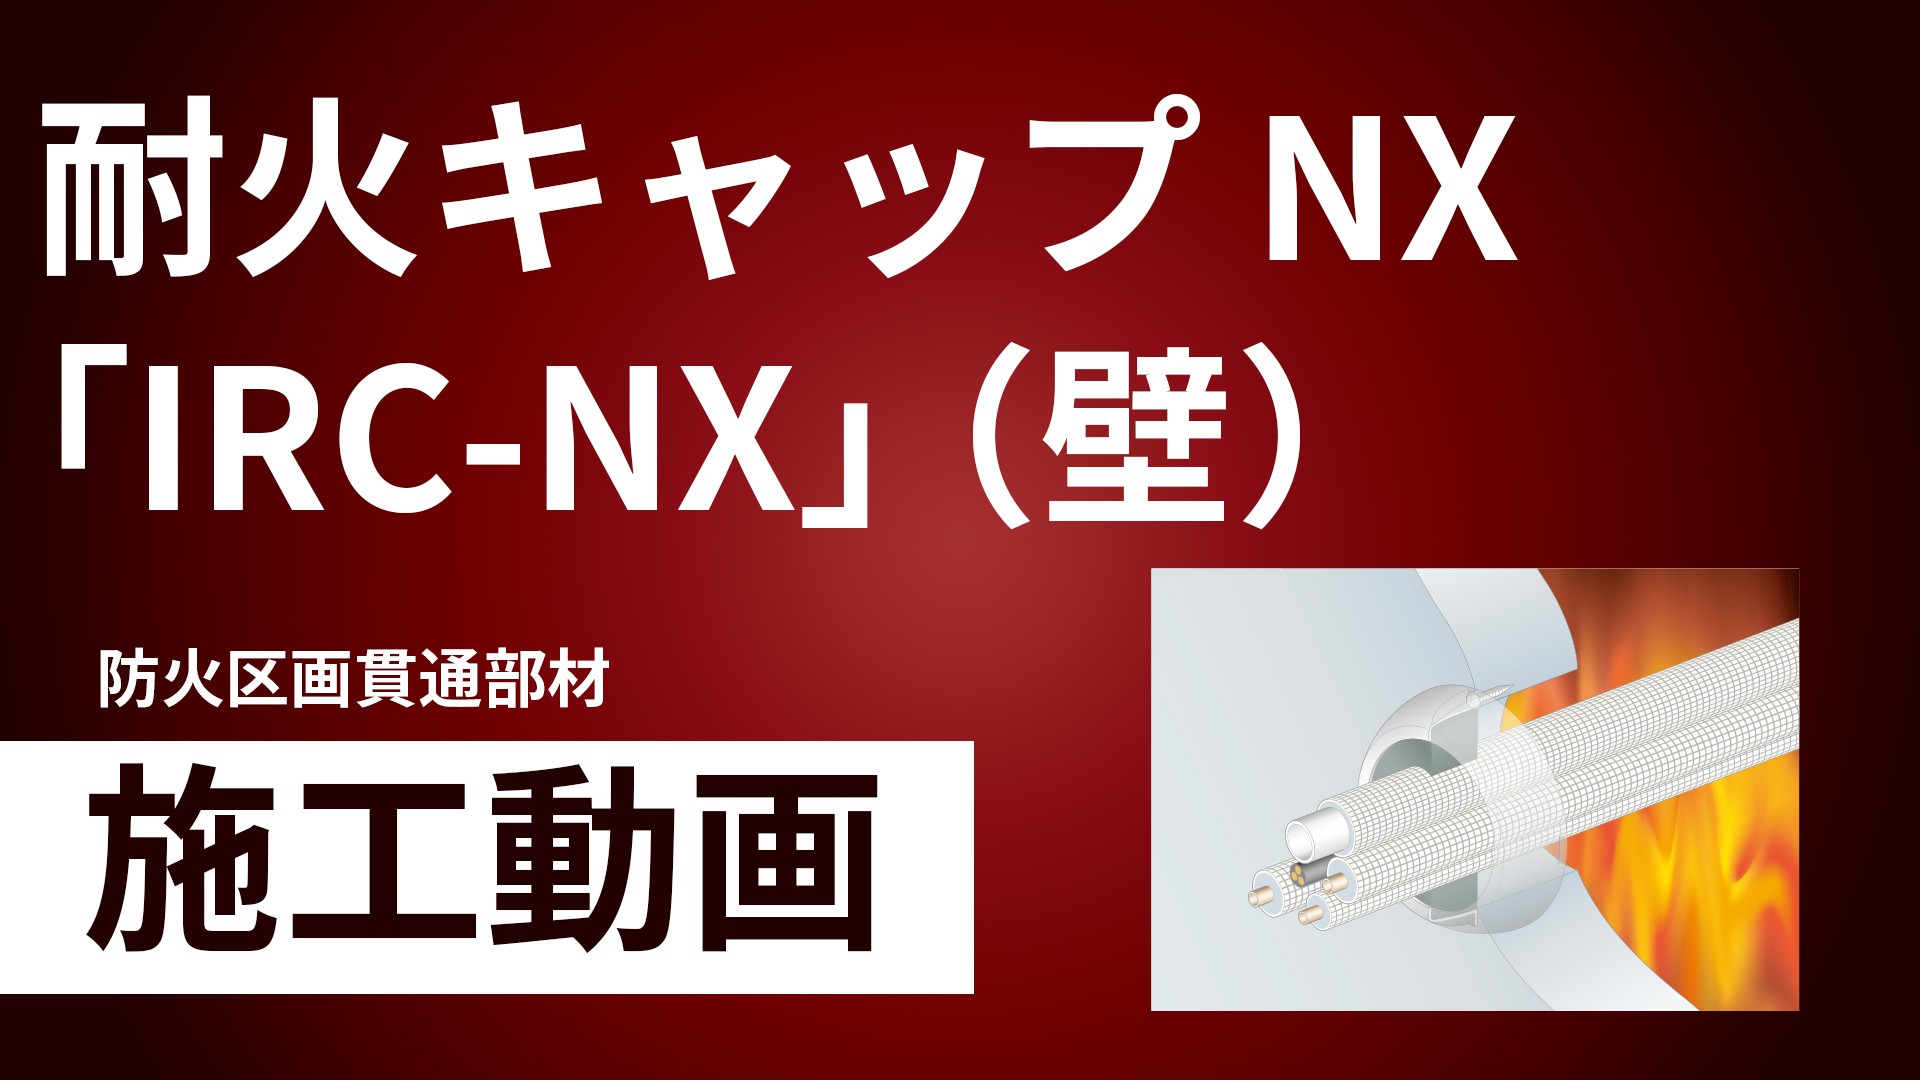 耐火キャップNX「IRC-NX」（壁）施工手順動画